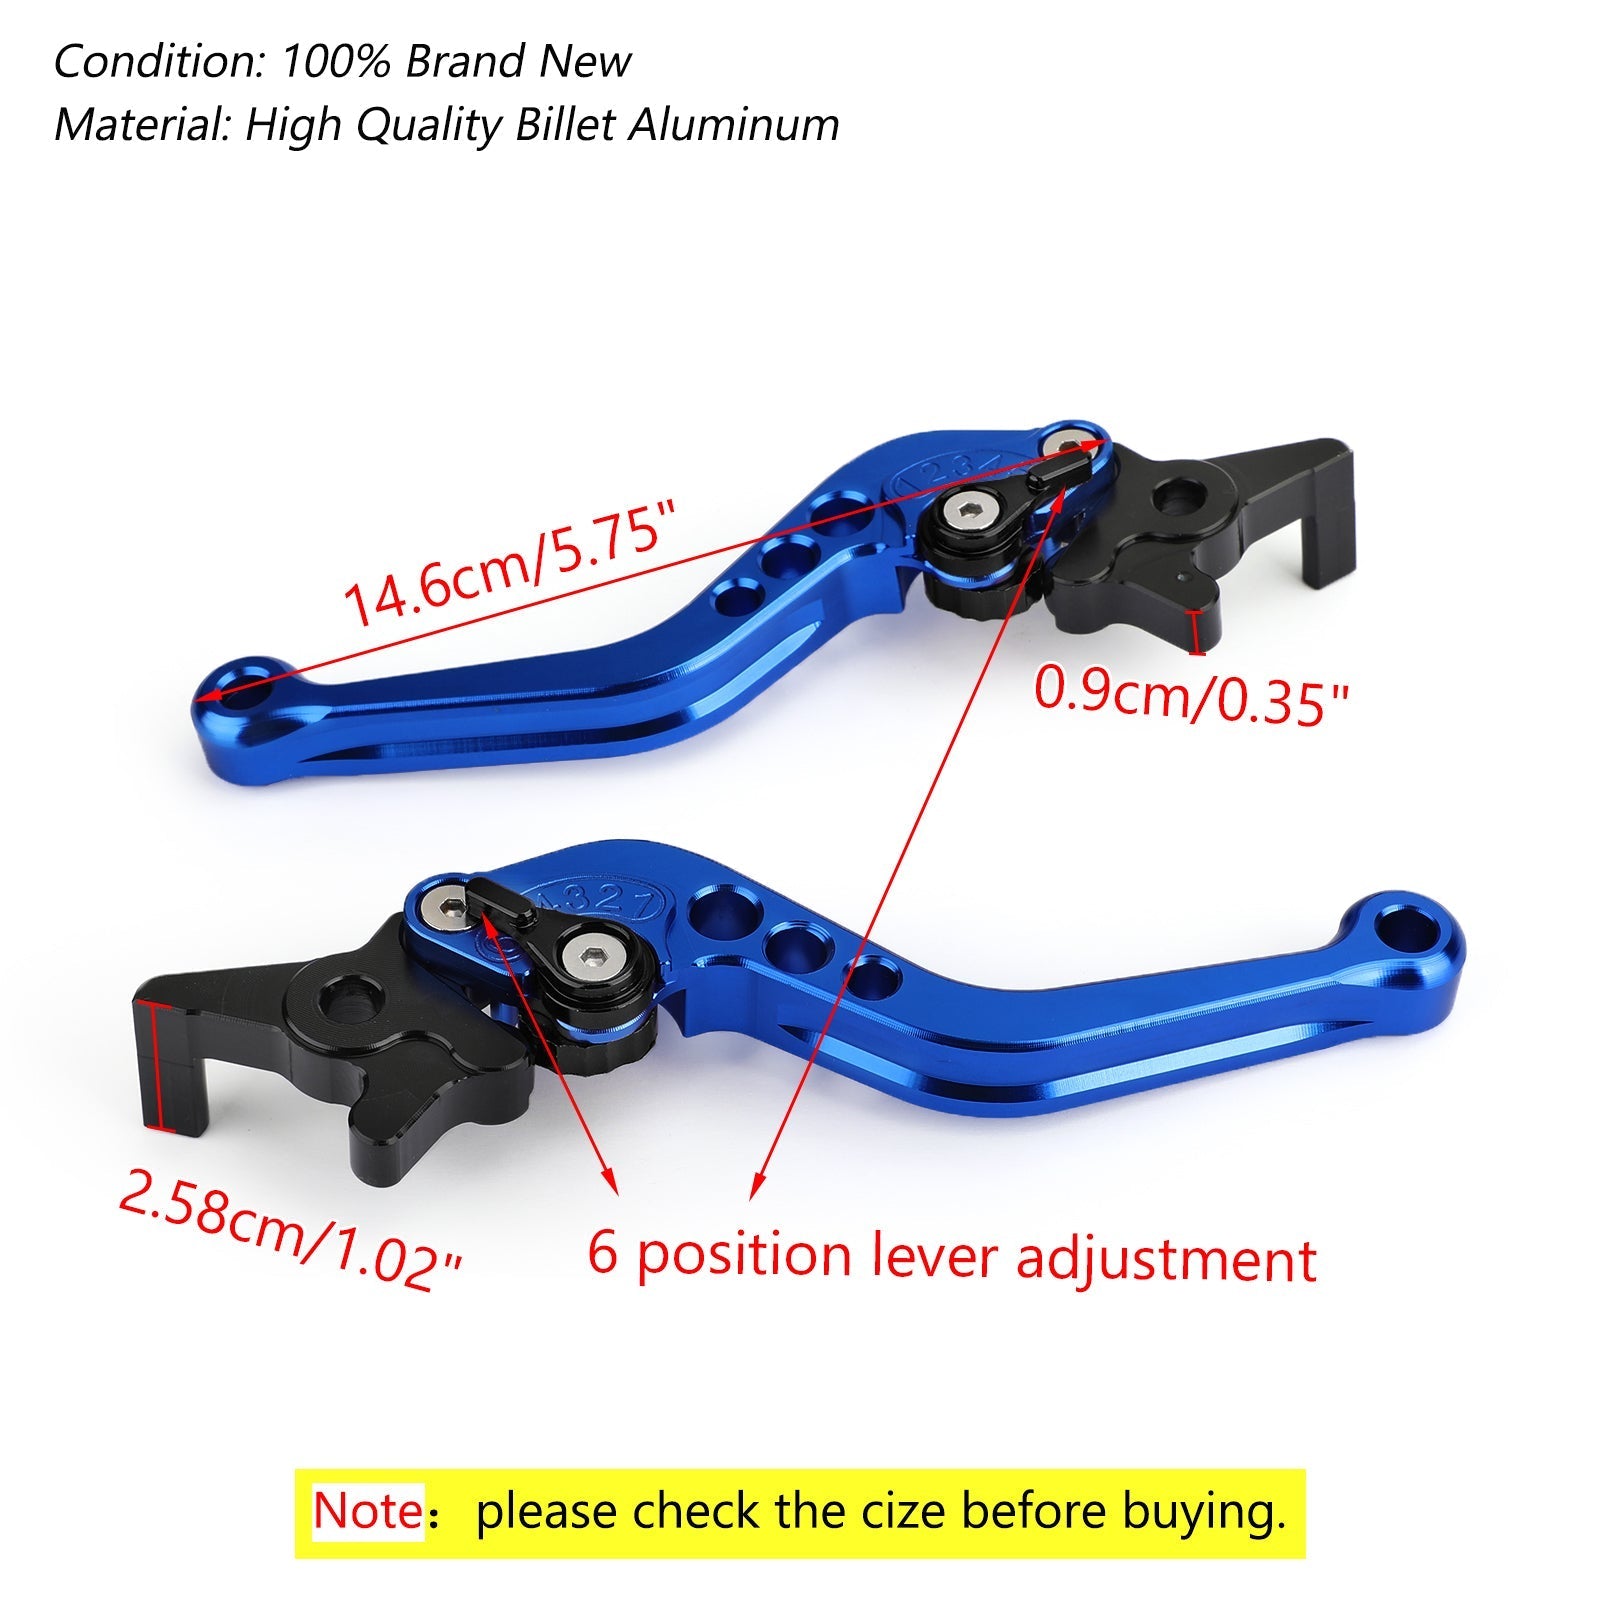 Leve freno frizione in alluminio per moto sinistra e destra per NMAX 125/155 2015-2018 generiche